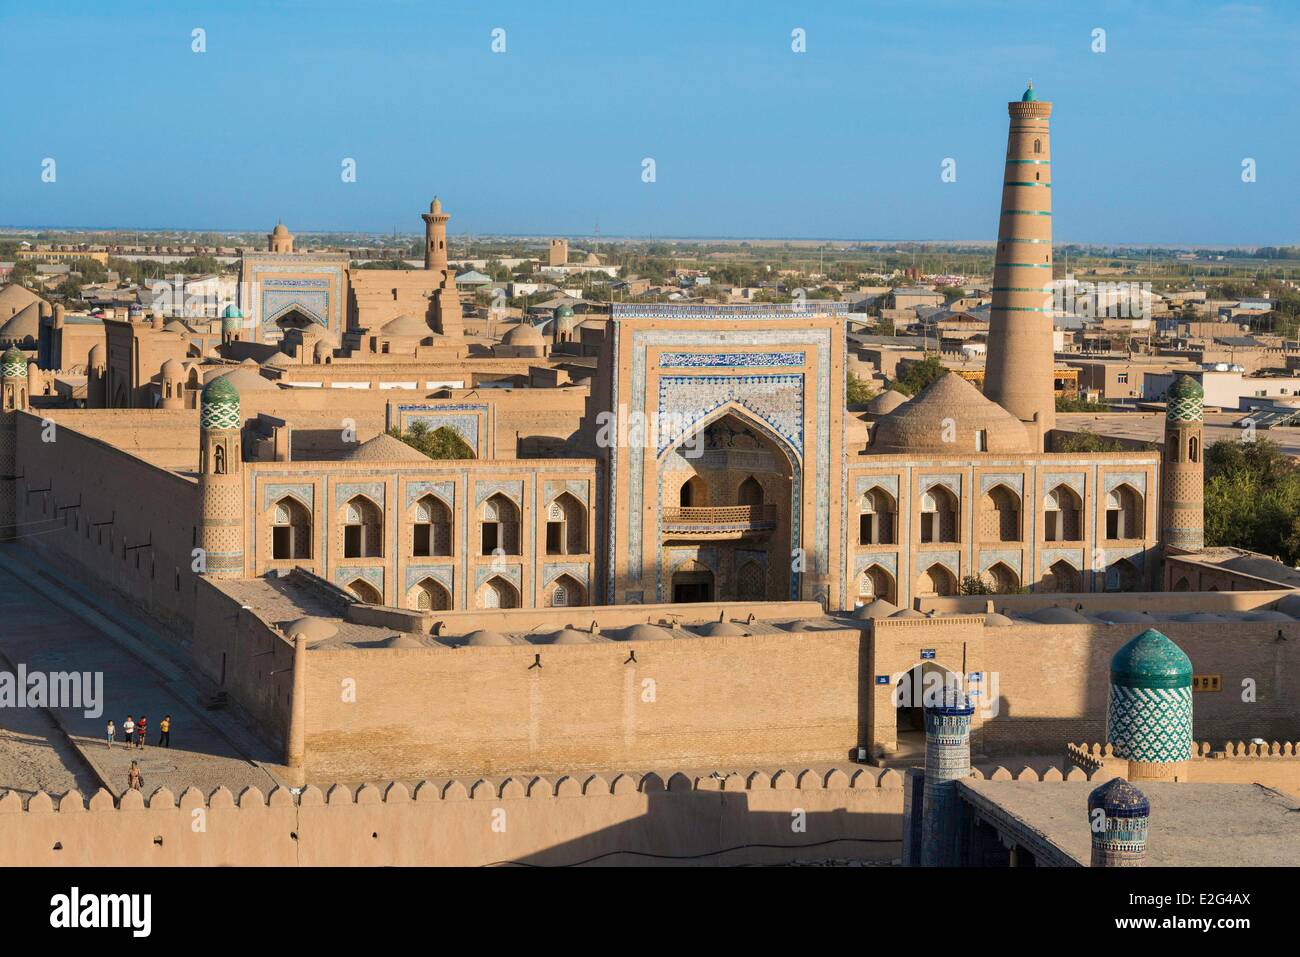 Usbekistan Seidenstraße Khorezm Provinz geschützt Chiwa Itchan Kala Stadt als Weltkulturerbe durch die UNESCO Arche Palast Altstadt Stockfoto